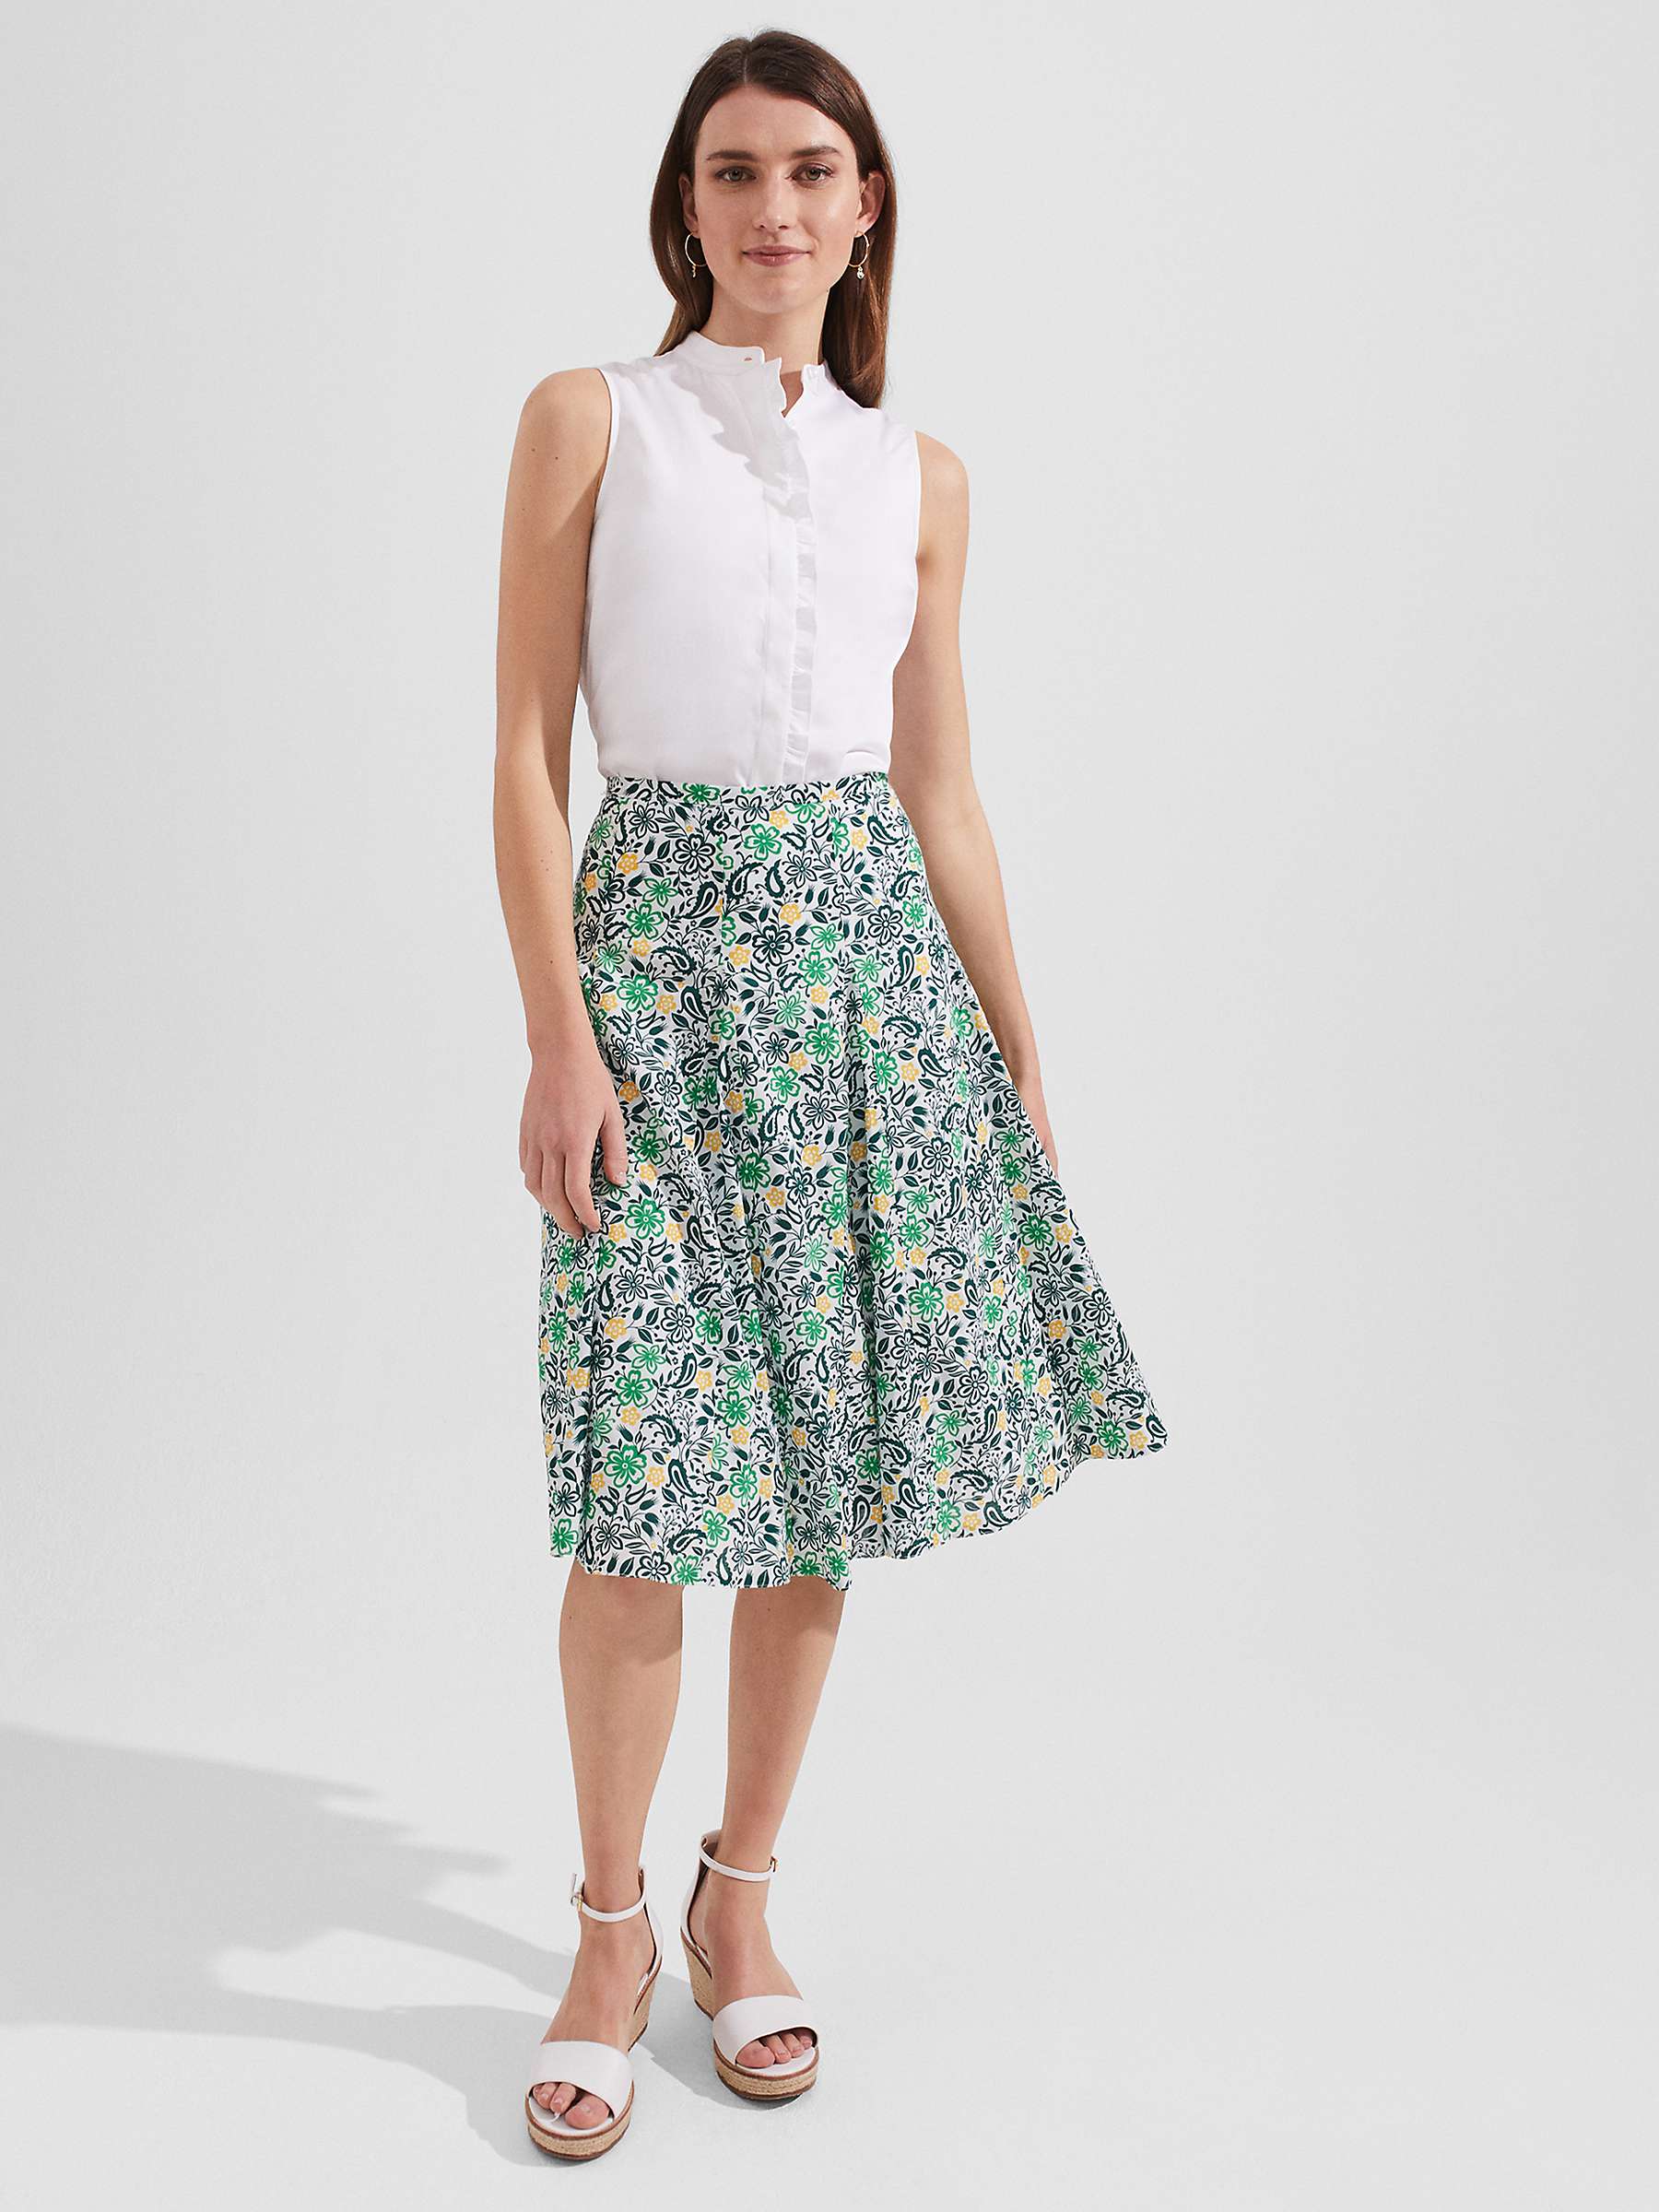 Buy Hobbs Melina Floral Print Skirt, White/Multi Online at johnlewis.com